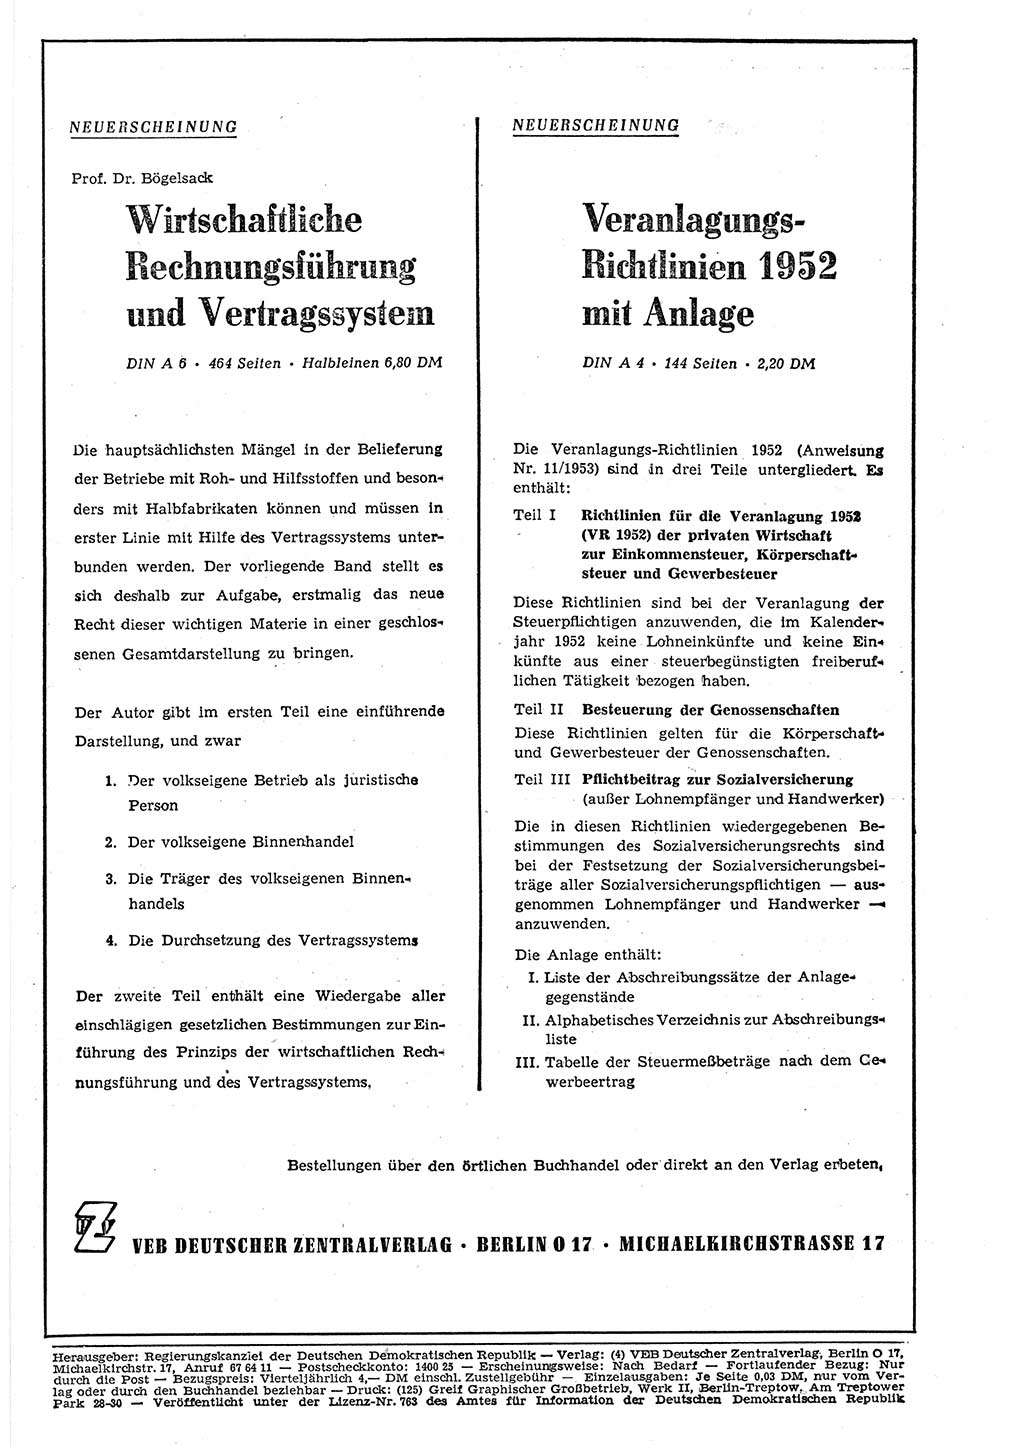 Gesetzblatt (GBl.) der Deutschen Demokratischen Republik (DDR) 1953, Seite 418 (GBl. DDR 1953, S. 418)